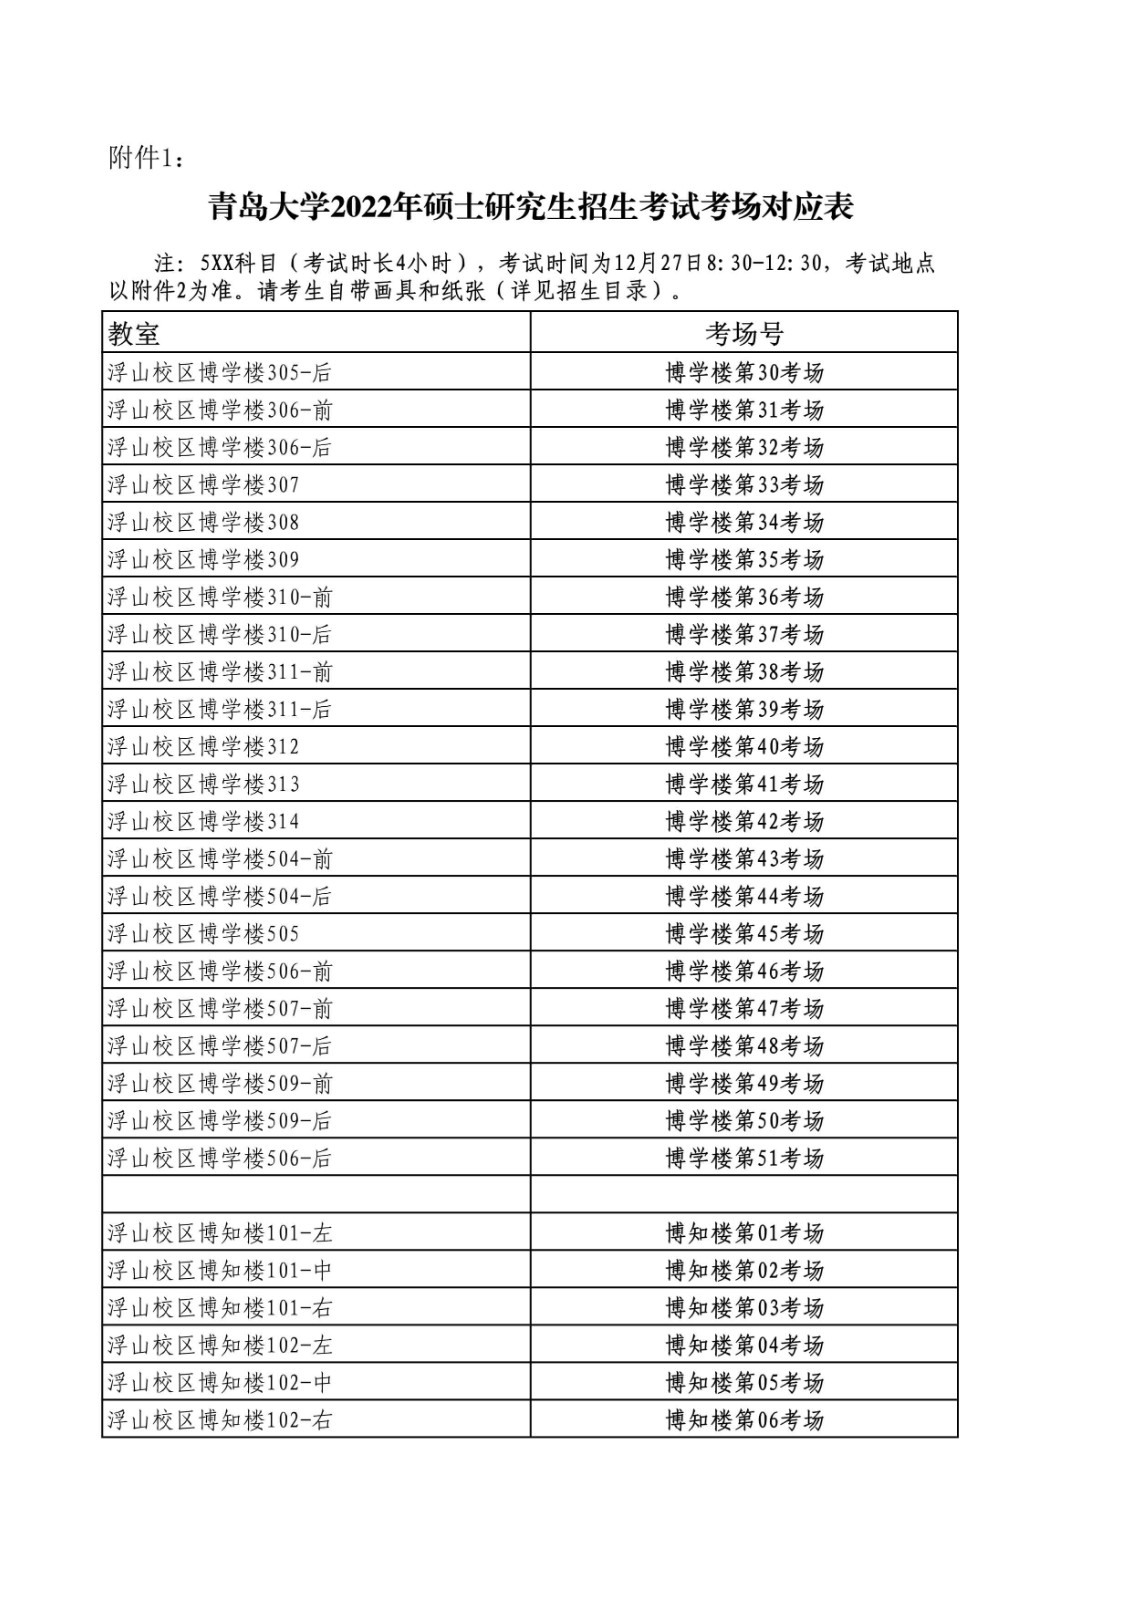 2022年全国硕士研究生招生考试(初试)青岛大学考点公告(含考场安排)